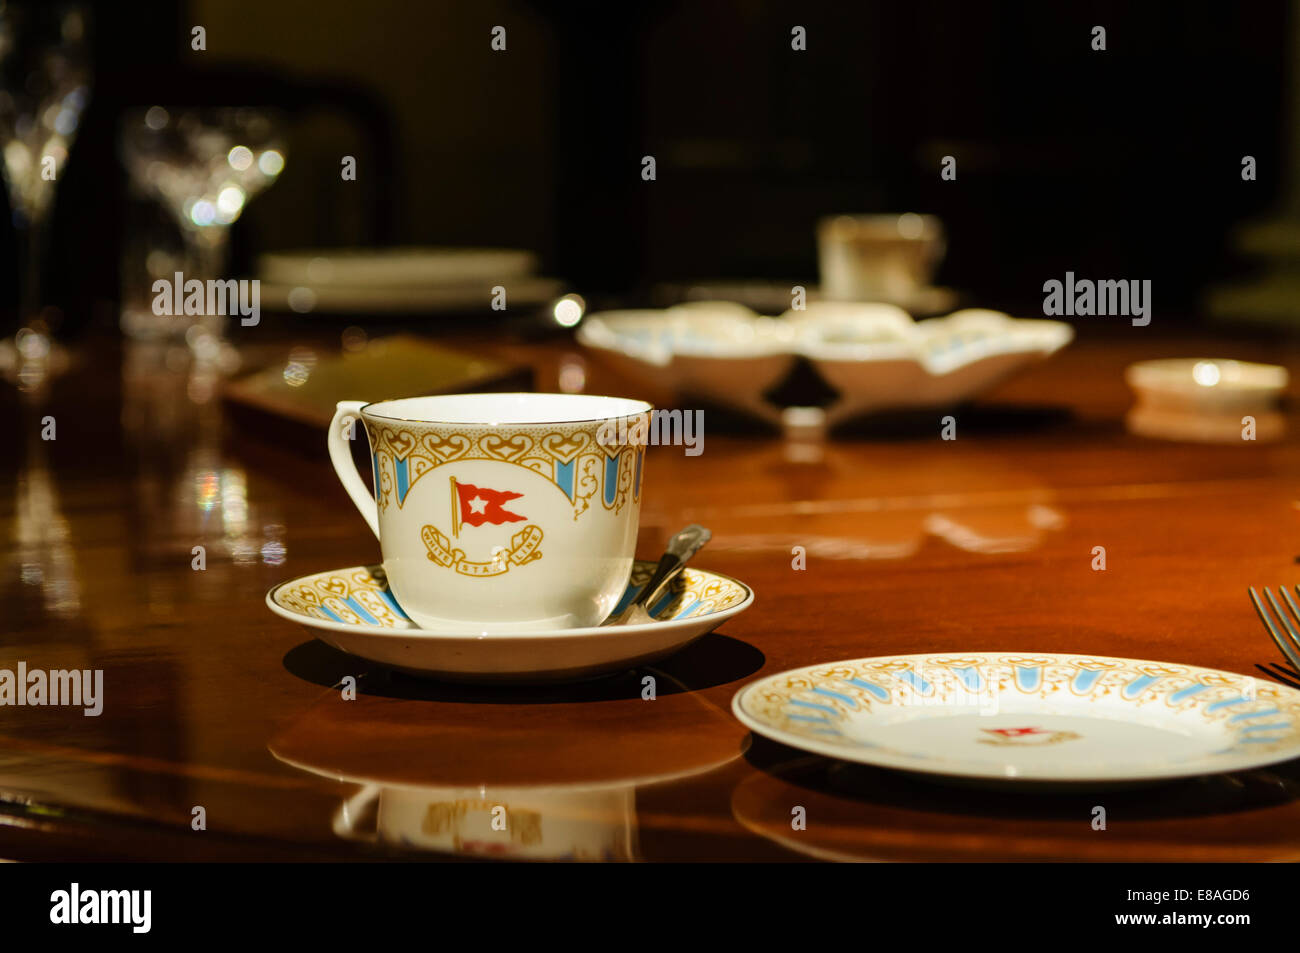 Tavolo da pranzo, posate e stoviglie che avrebbe dovuto essere il capitano della sala da pranzo privata sul Titanic quando ha navigato ma non erano pronti a tempo Foto Stock